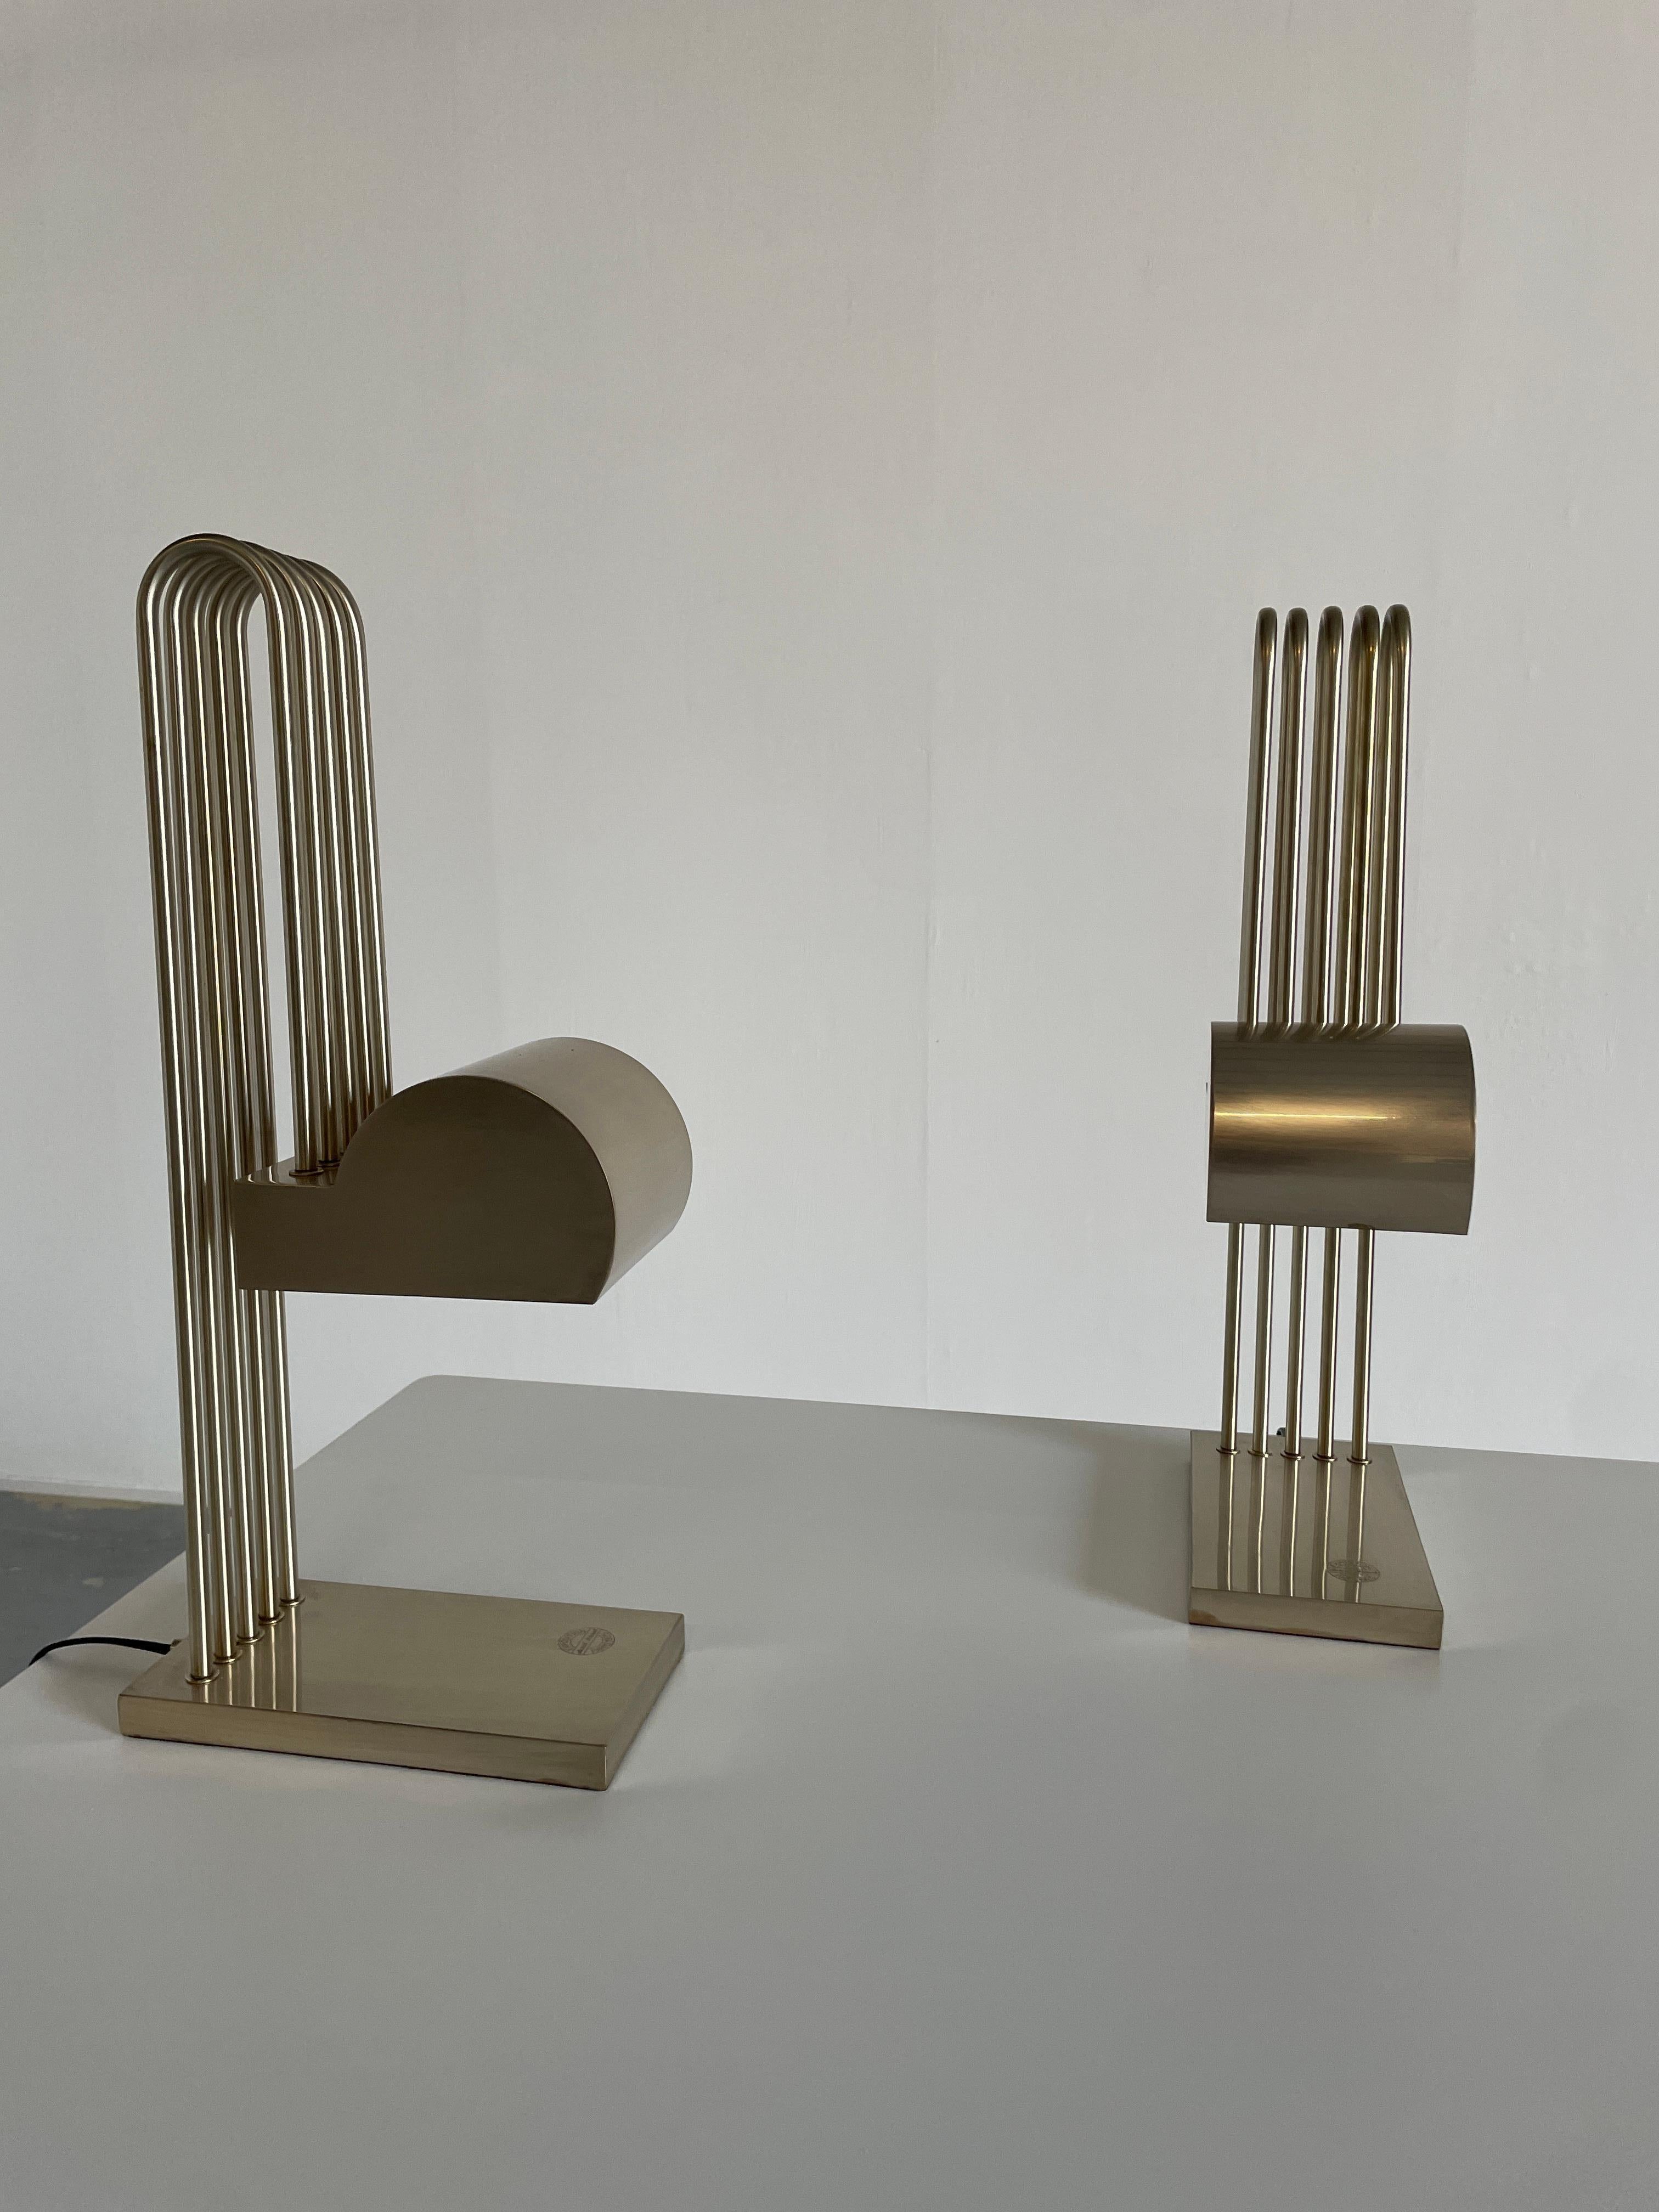 Pair of Marcel Breuer Bauhaus Table Lamps for the Paris Exhibition 1925, France 1